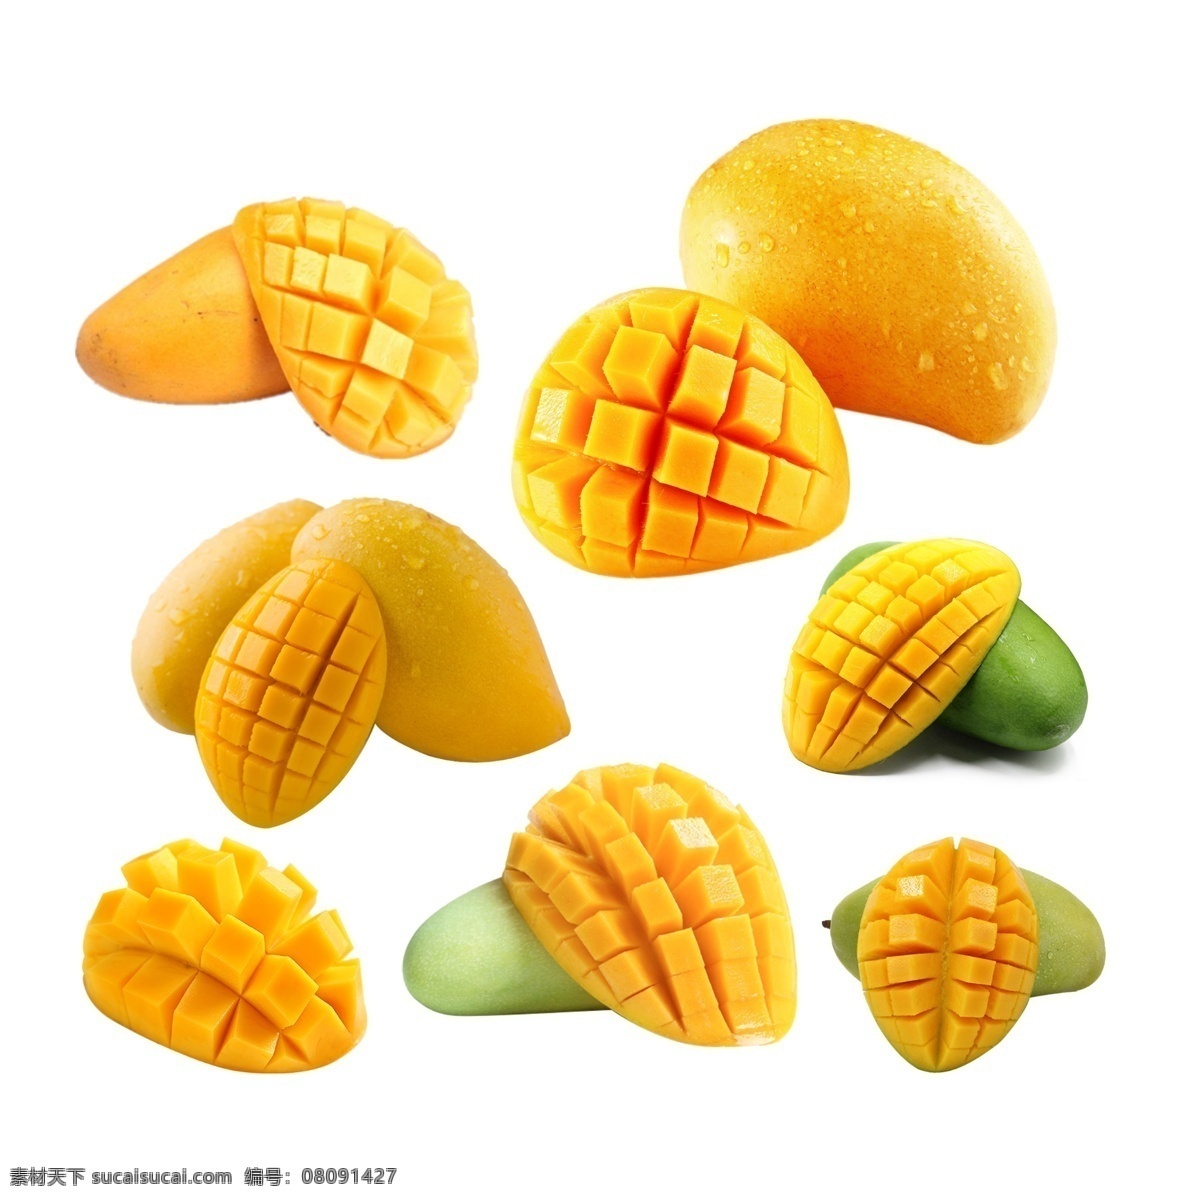 芒果素材 芒果元素 芒果皮 芒果海报 底纹边框 其他素材